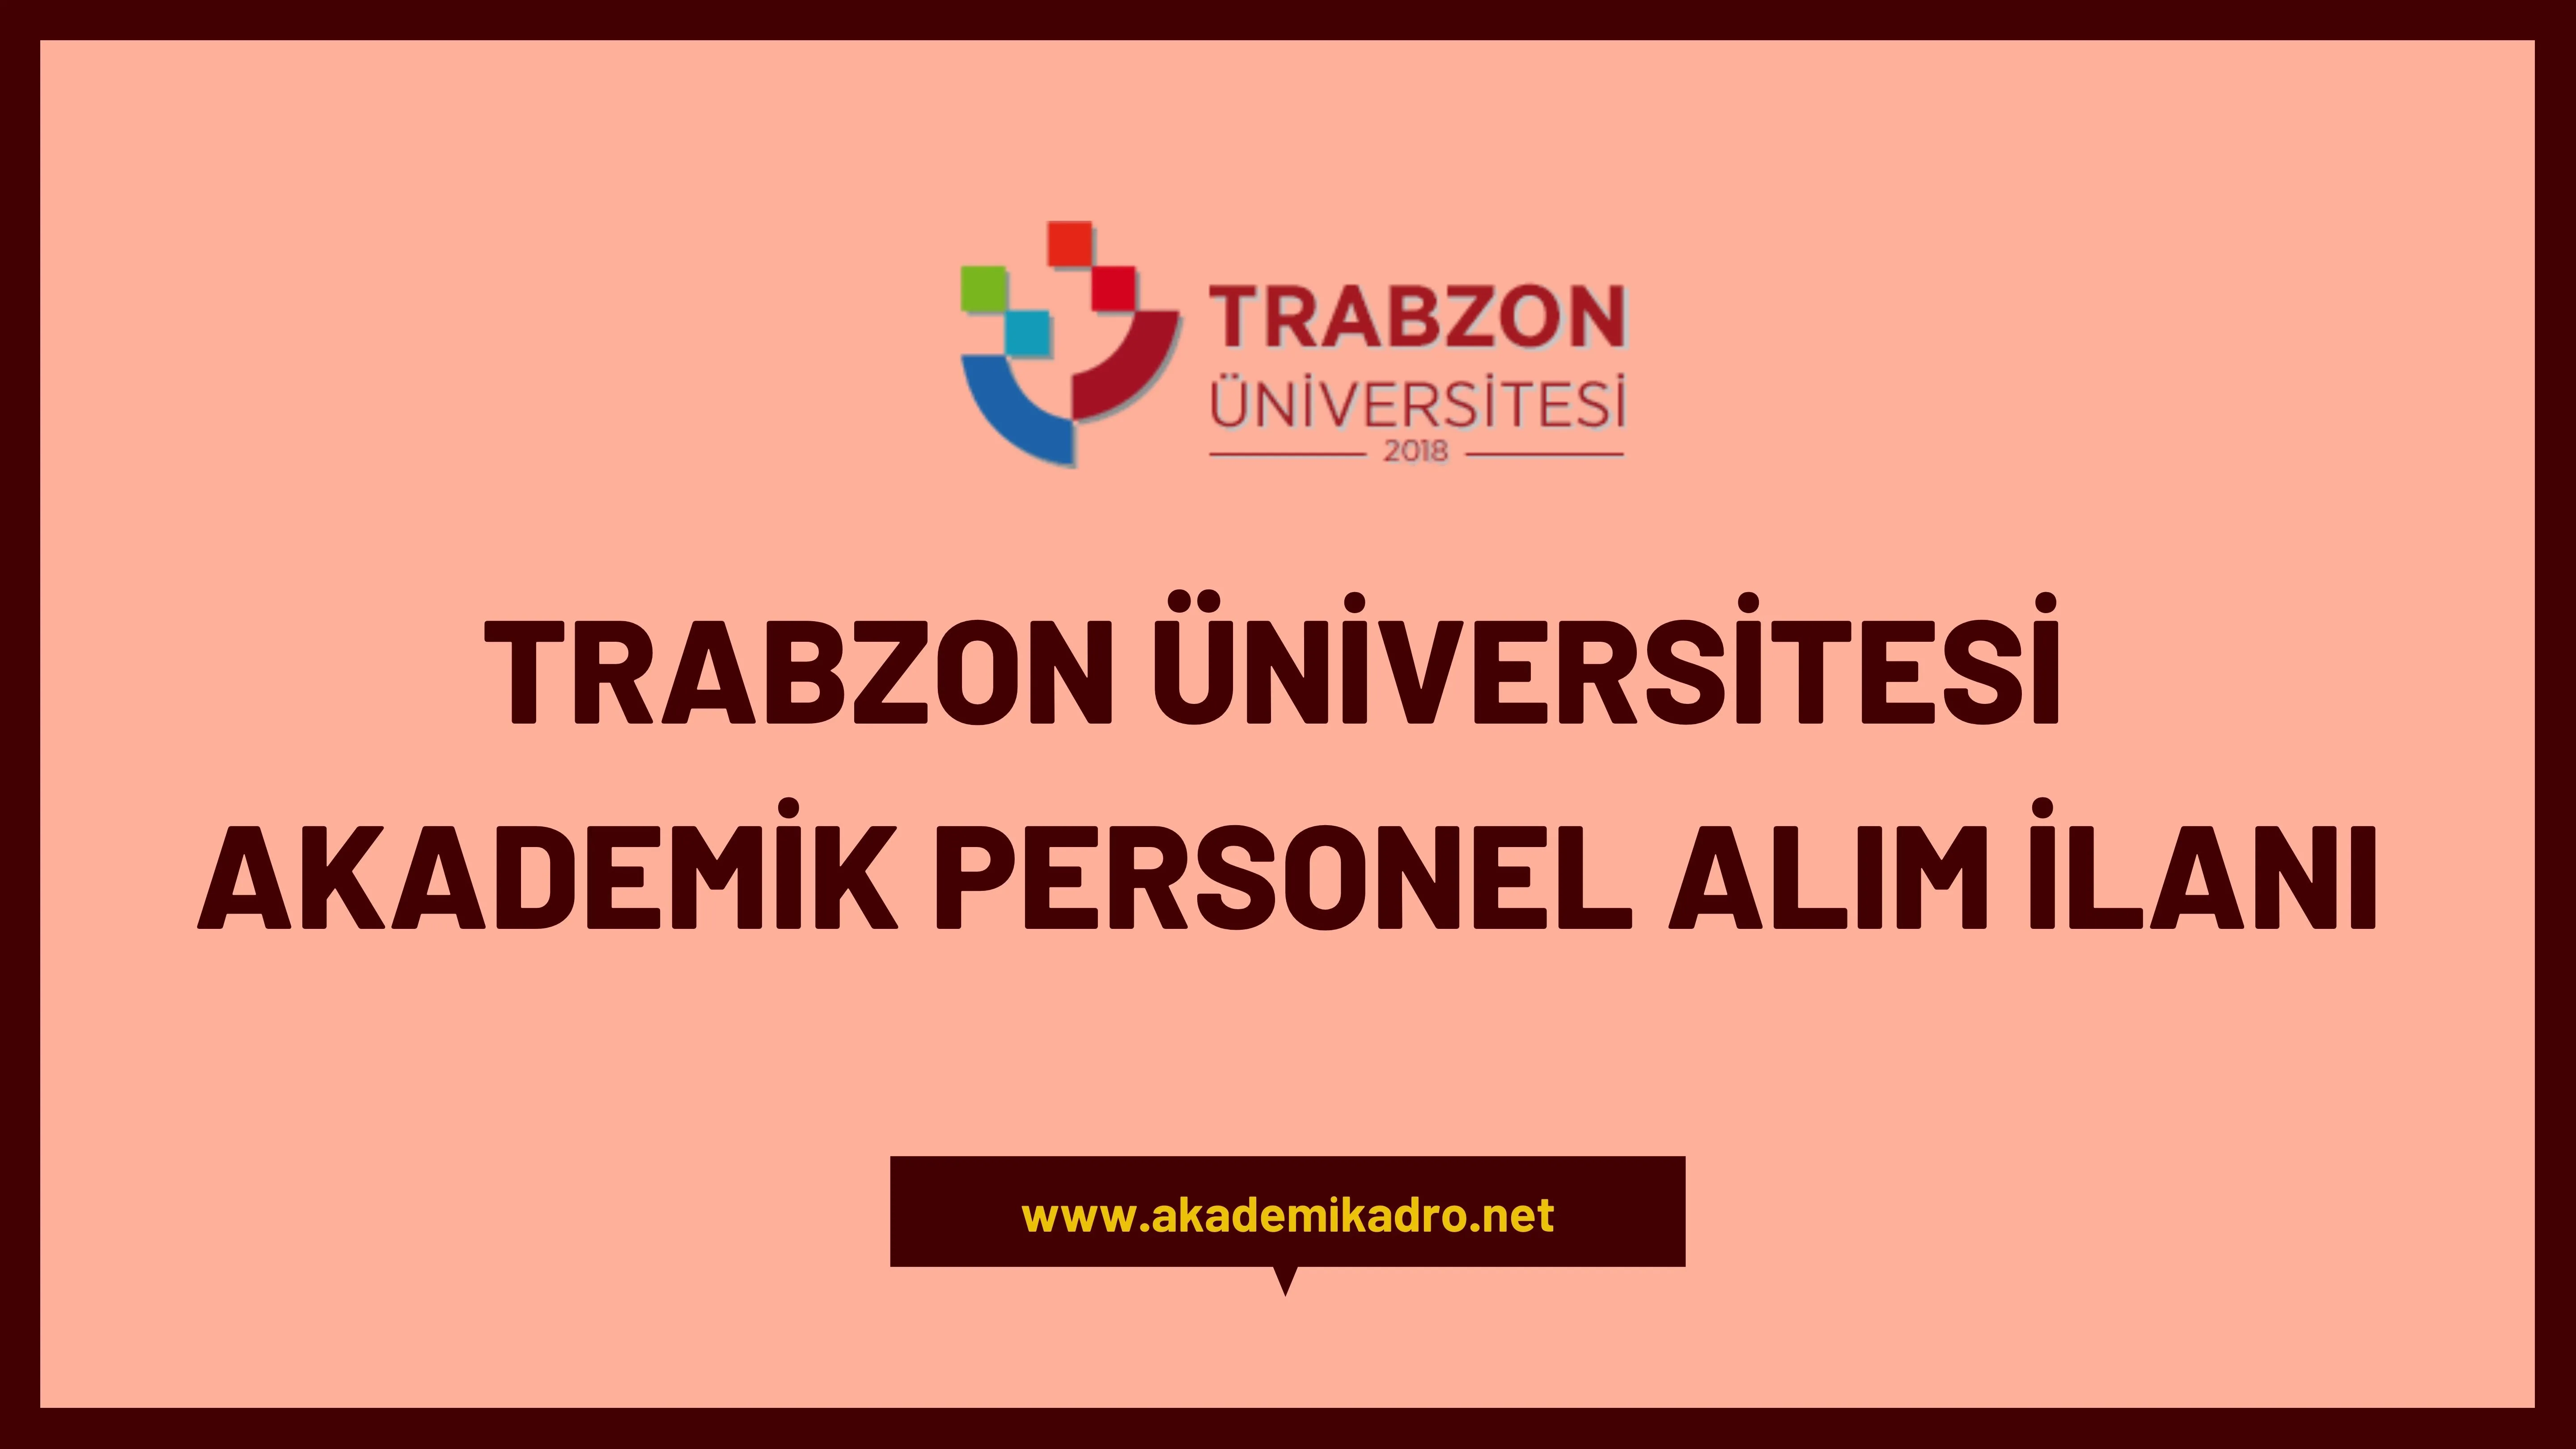 Trabzon Üniversitesi birçok alandan 28 öğretim üyesi alacak.